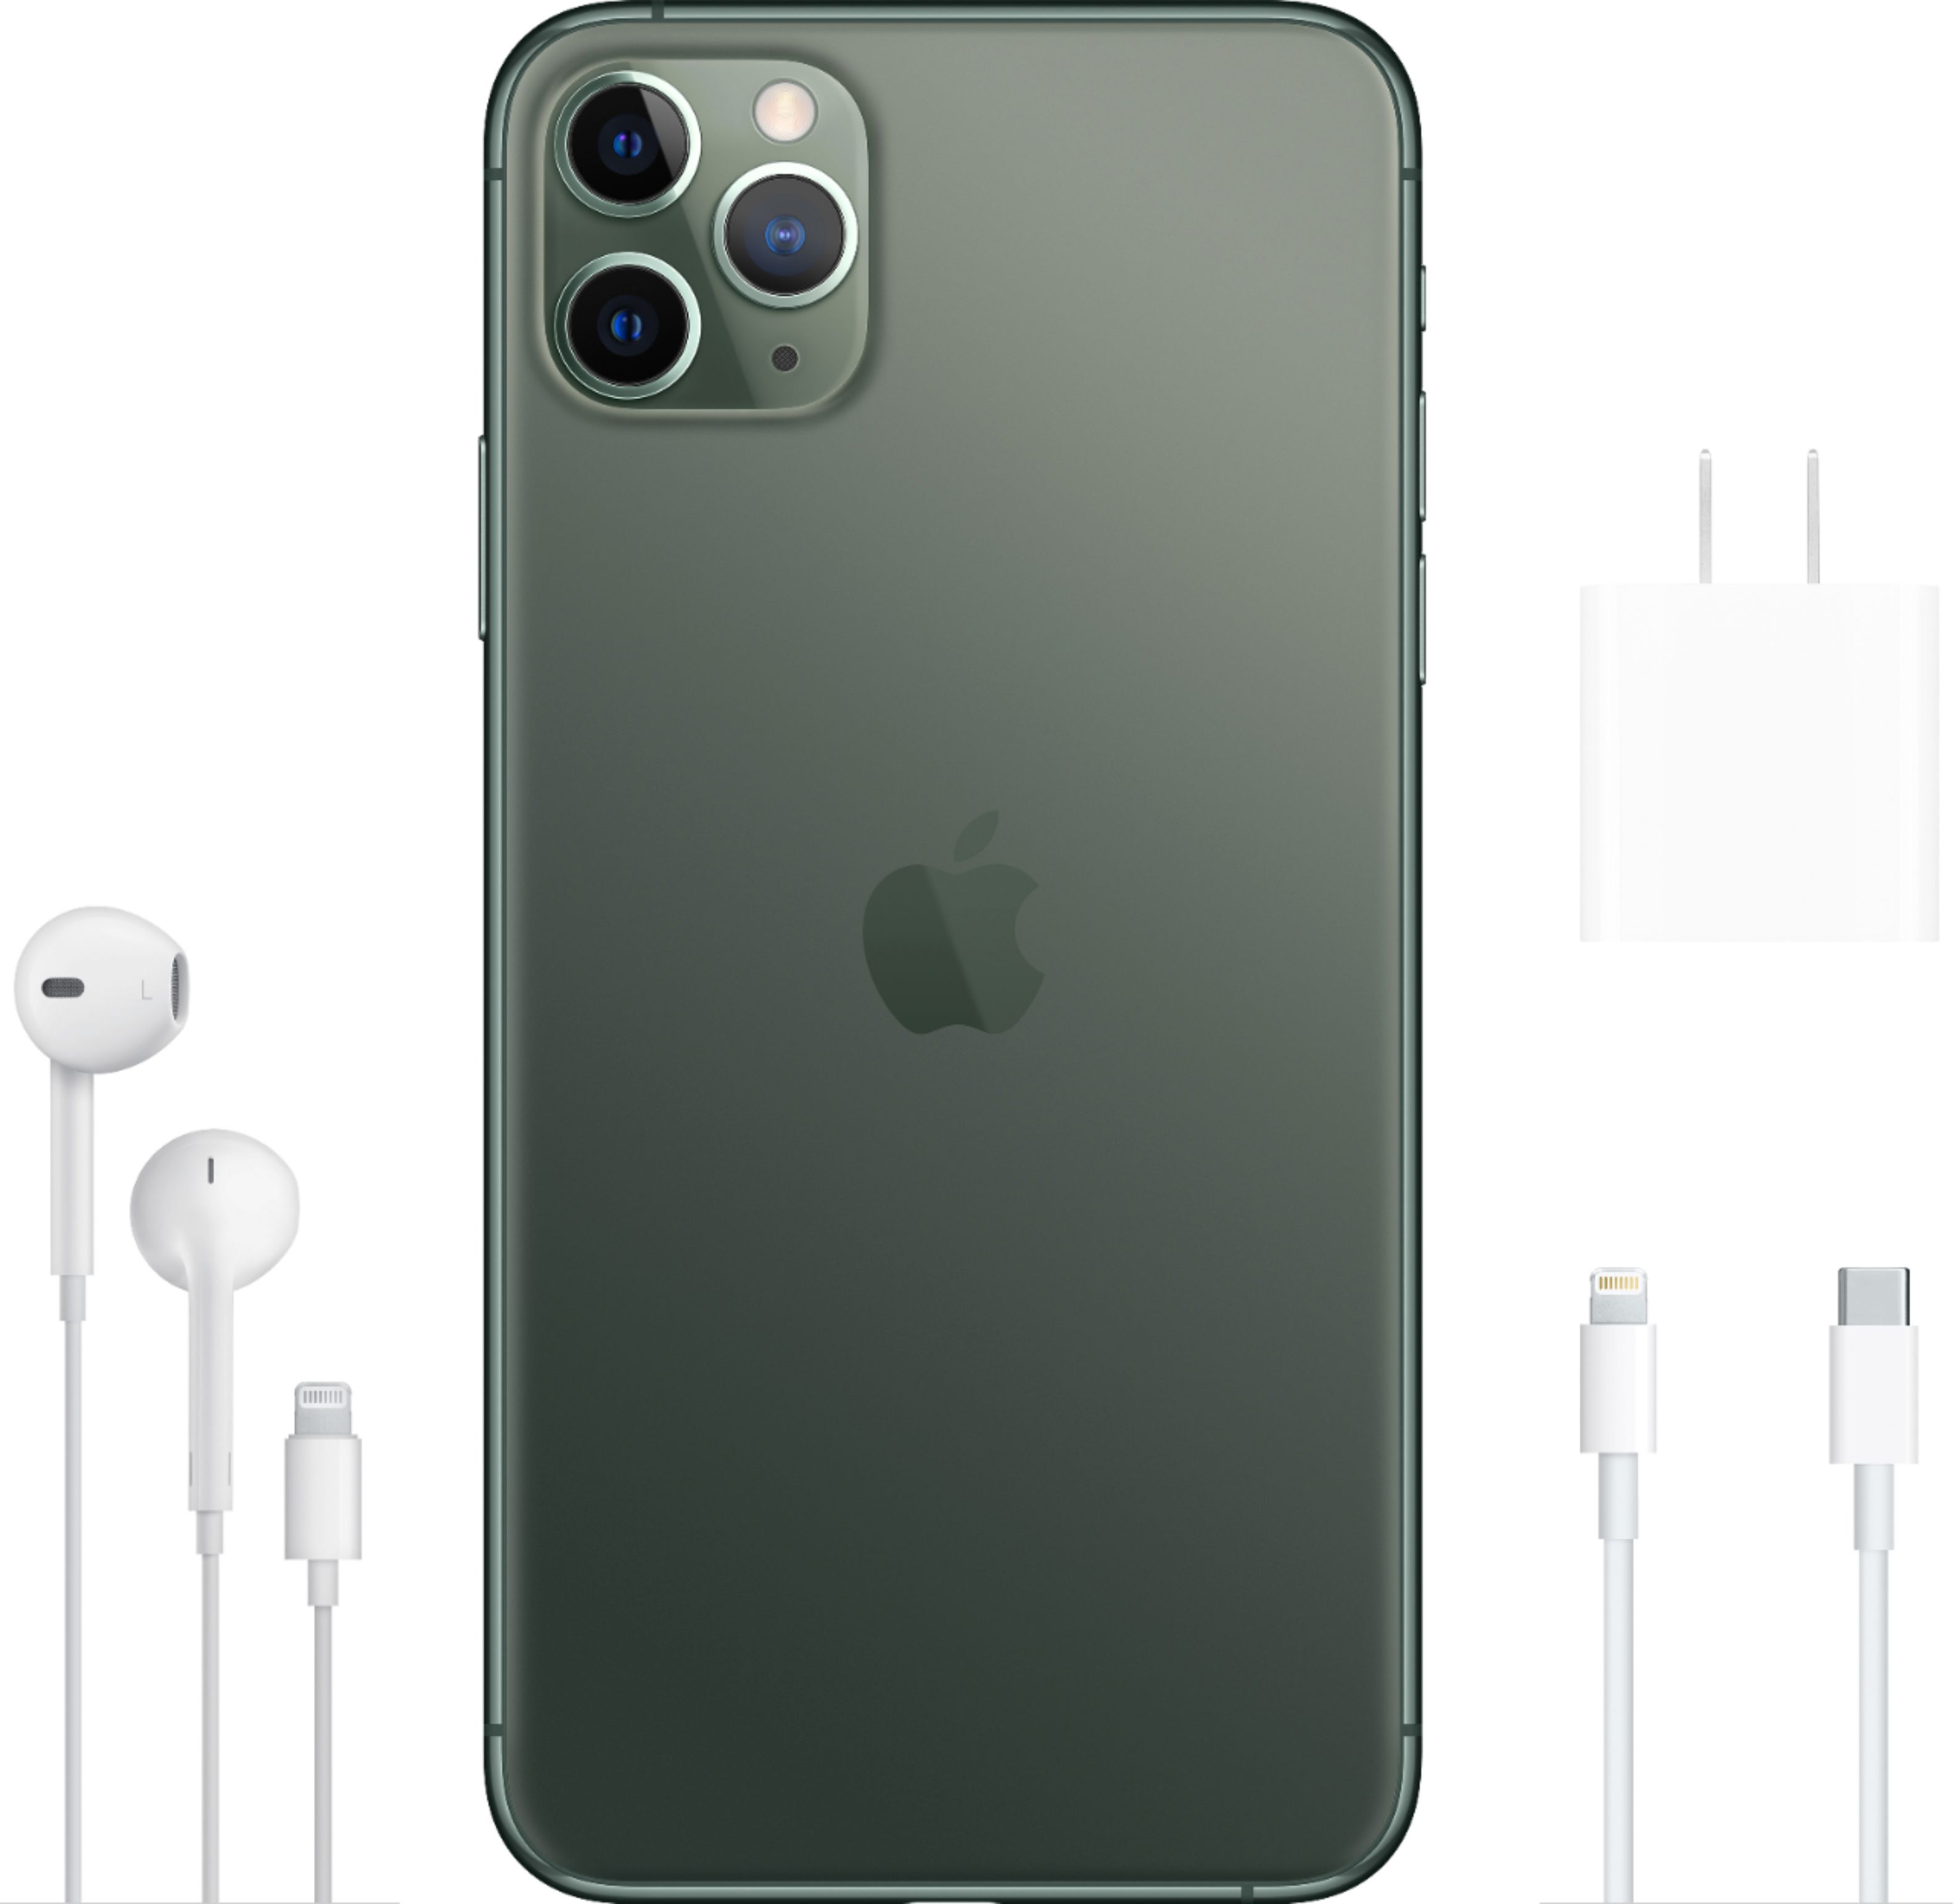 スマホアクセサリー iPhone用ケース Best Buy: Apple iPhone 11 Pro Max 64GB Midnight Green (Sprint 